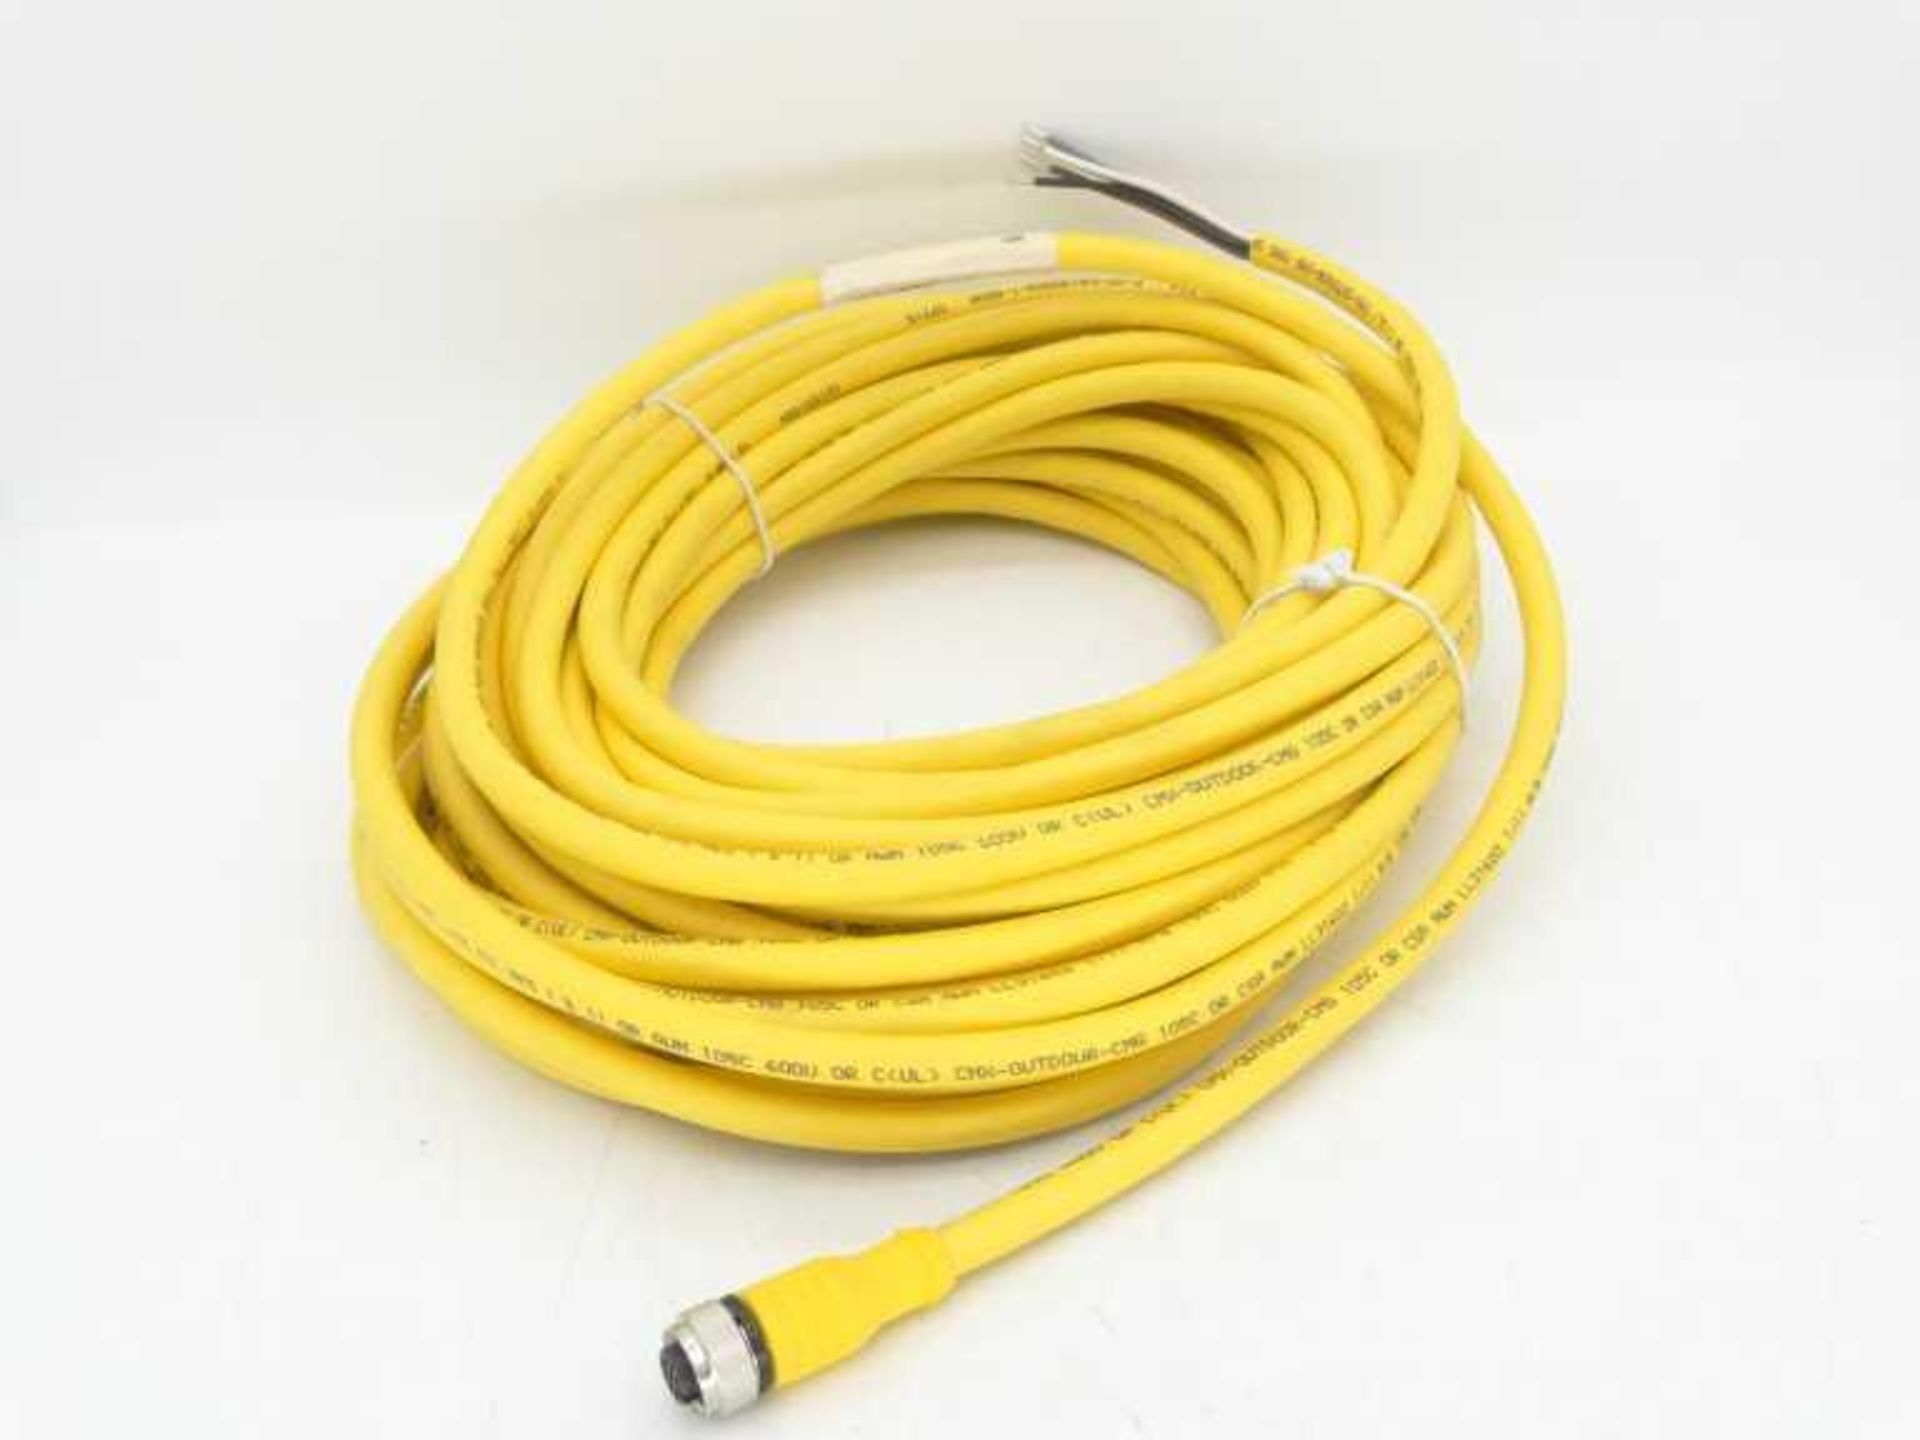 (5) TURCK RKC 4.5T-15/CS14274 Cable